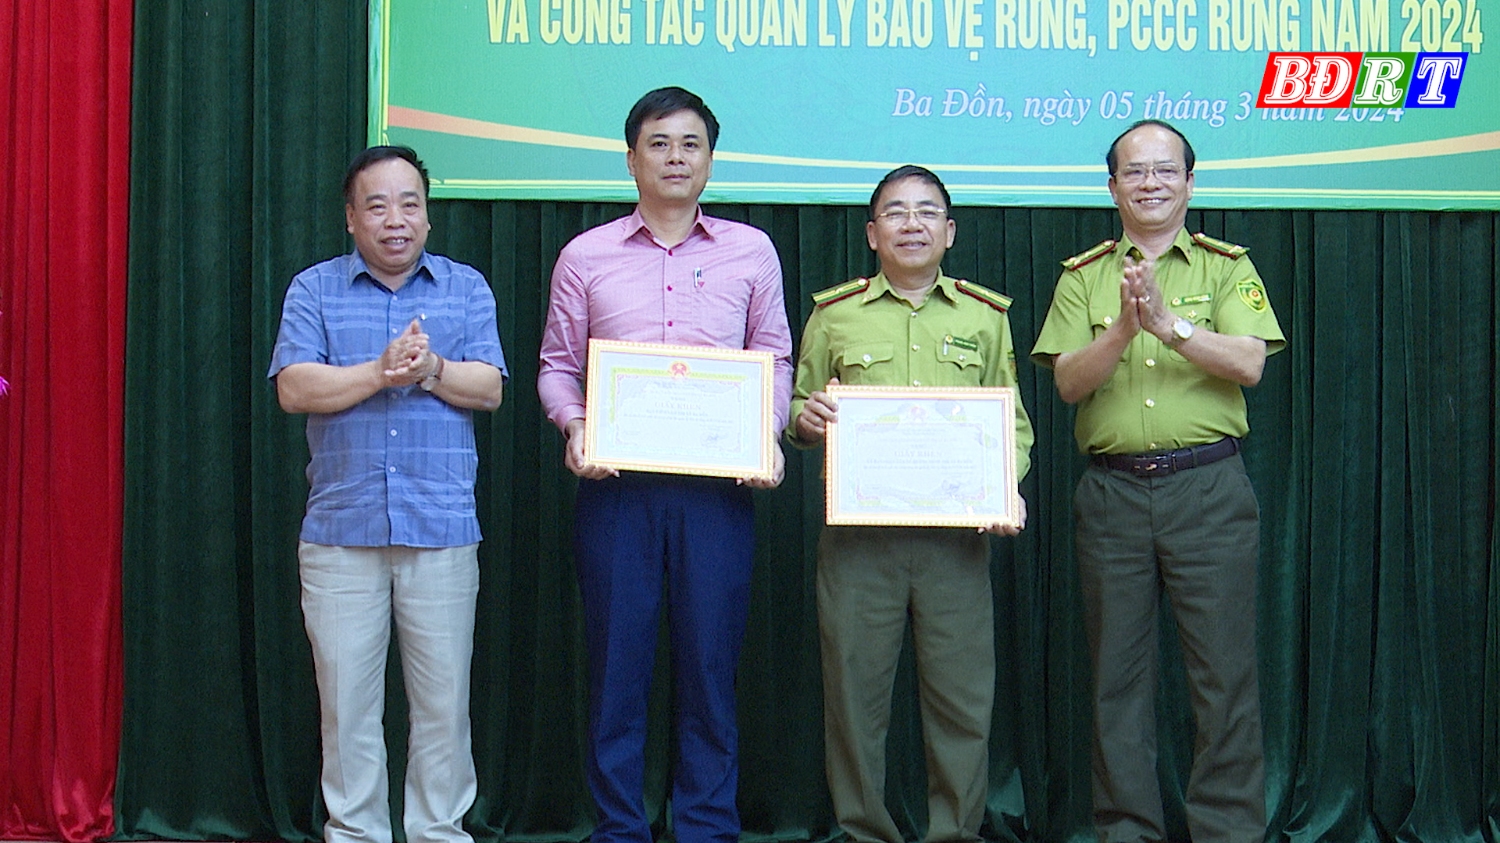 Các tập thể có thành tích trong công tác quản lý, bảo vệ rừng, PCCC rừng khen thưởng tại hội nghị